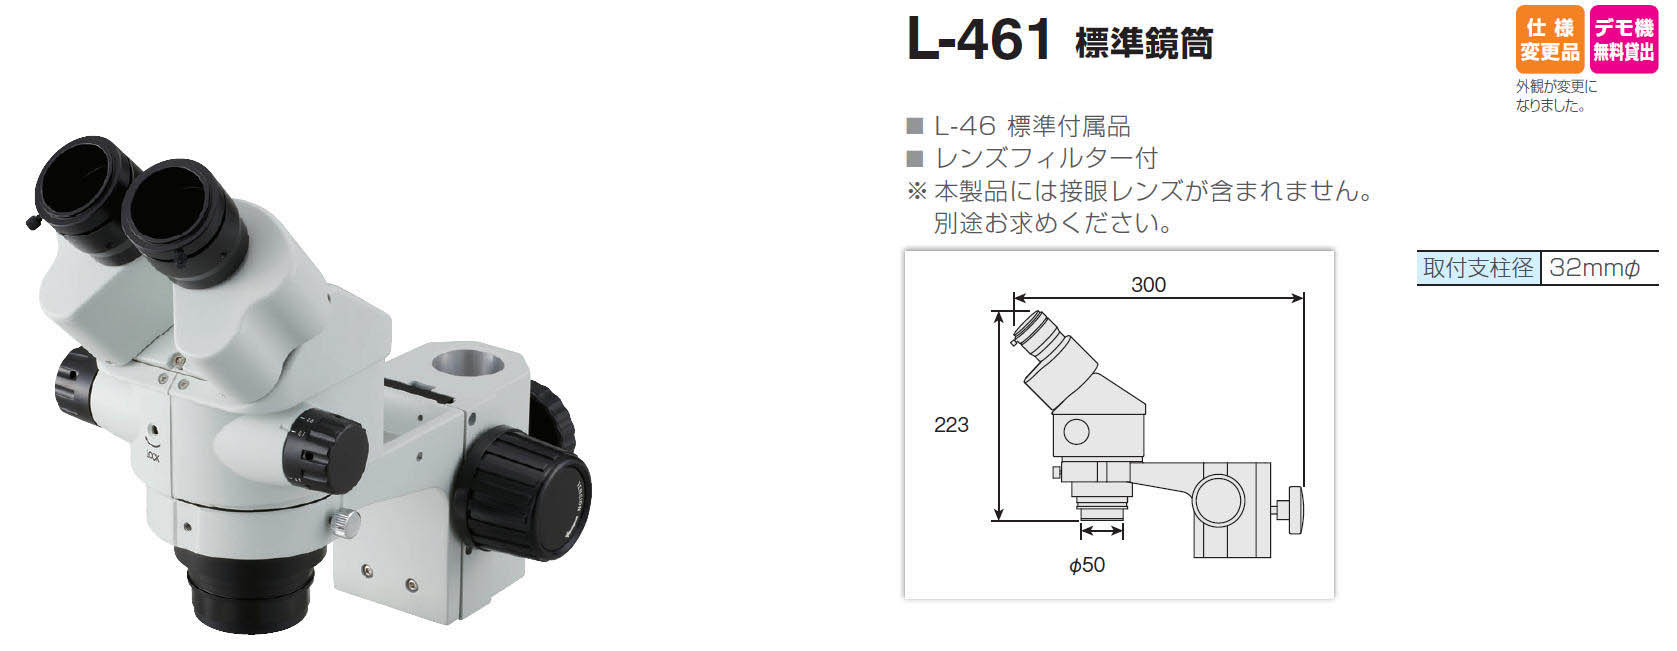 特価ブランド ホーザン HOZAN 標準鏡筒 レンズフィルター付 L-461